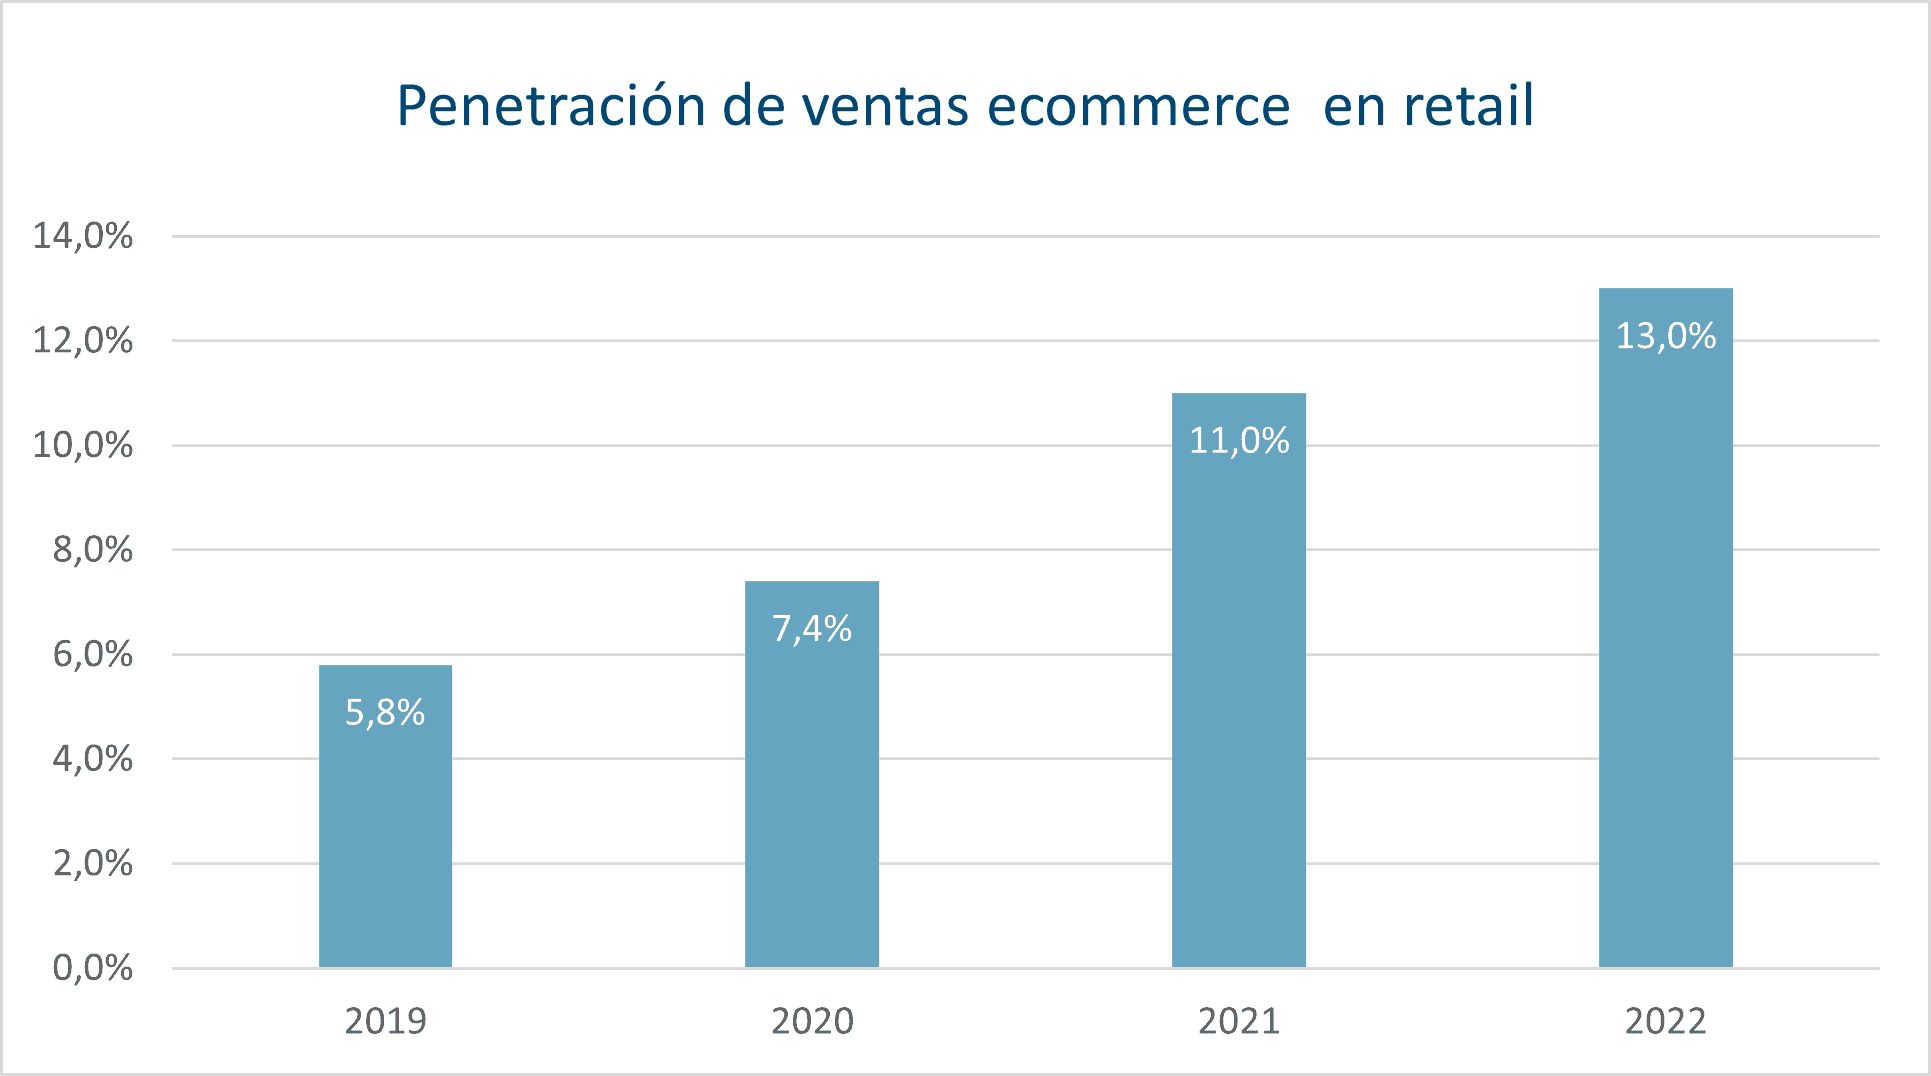 Variación anual de % ventas ecommerce en retail en Chile